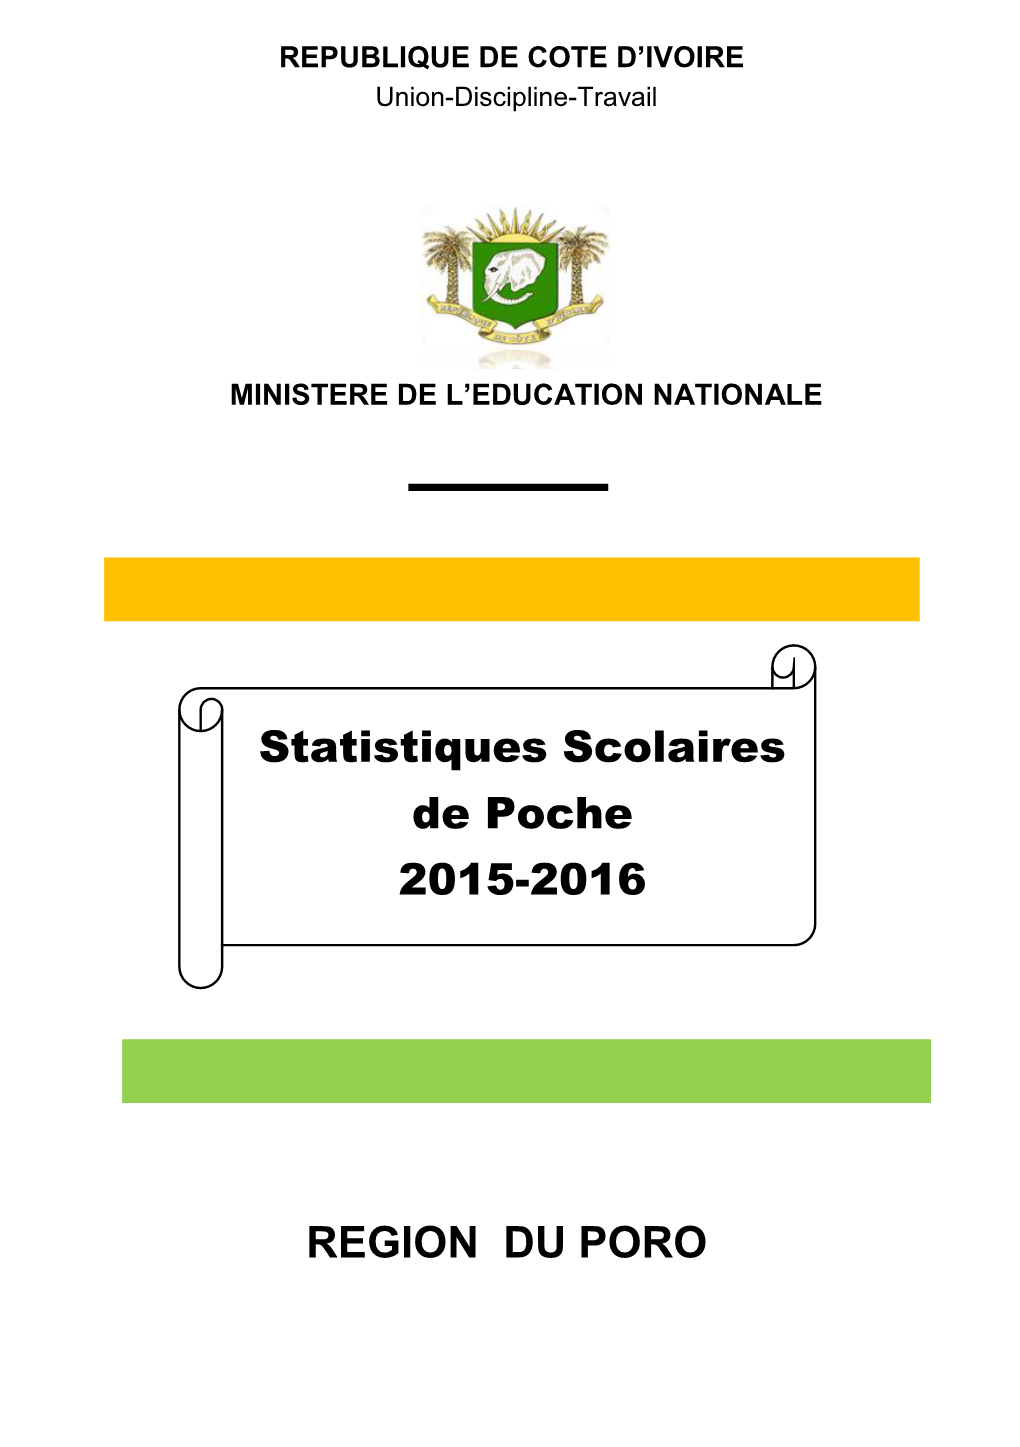 REGION DU PORO Statistiques Scolaires De Poche 2015-2016